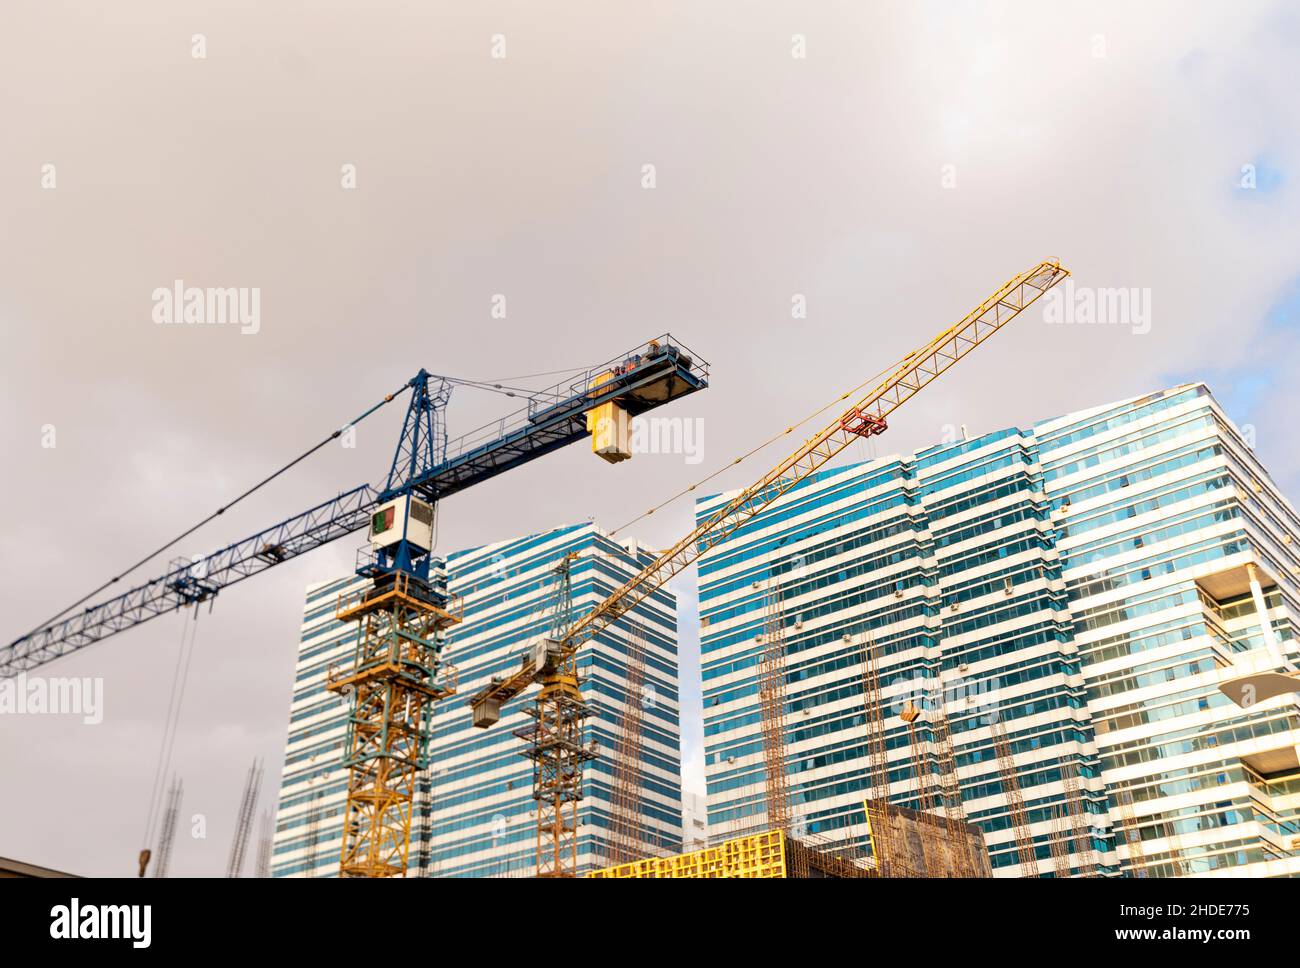 Baustelle, Kräne, Emerald Towers Immobilien moderner Komplex, entworfen vom Architekten Roy Varacalli, Astana, nur-Sultan, Kasachstan, Zentralasien Stockfoto